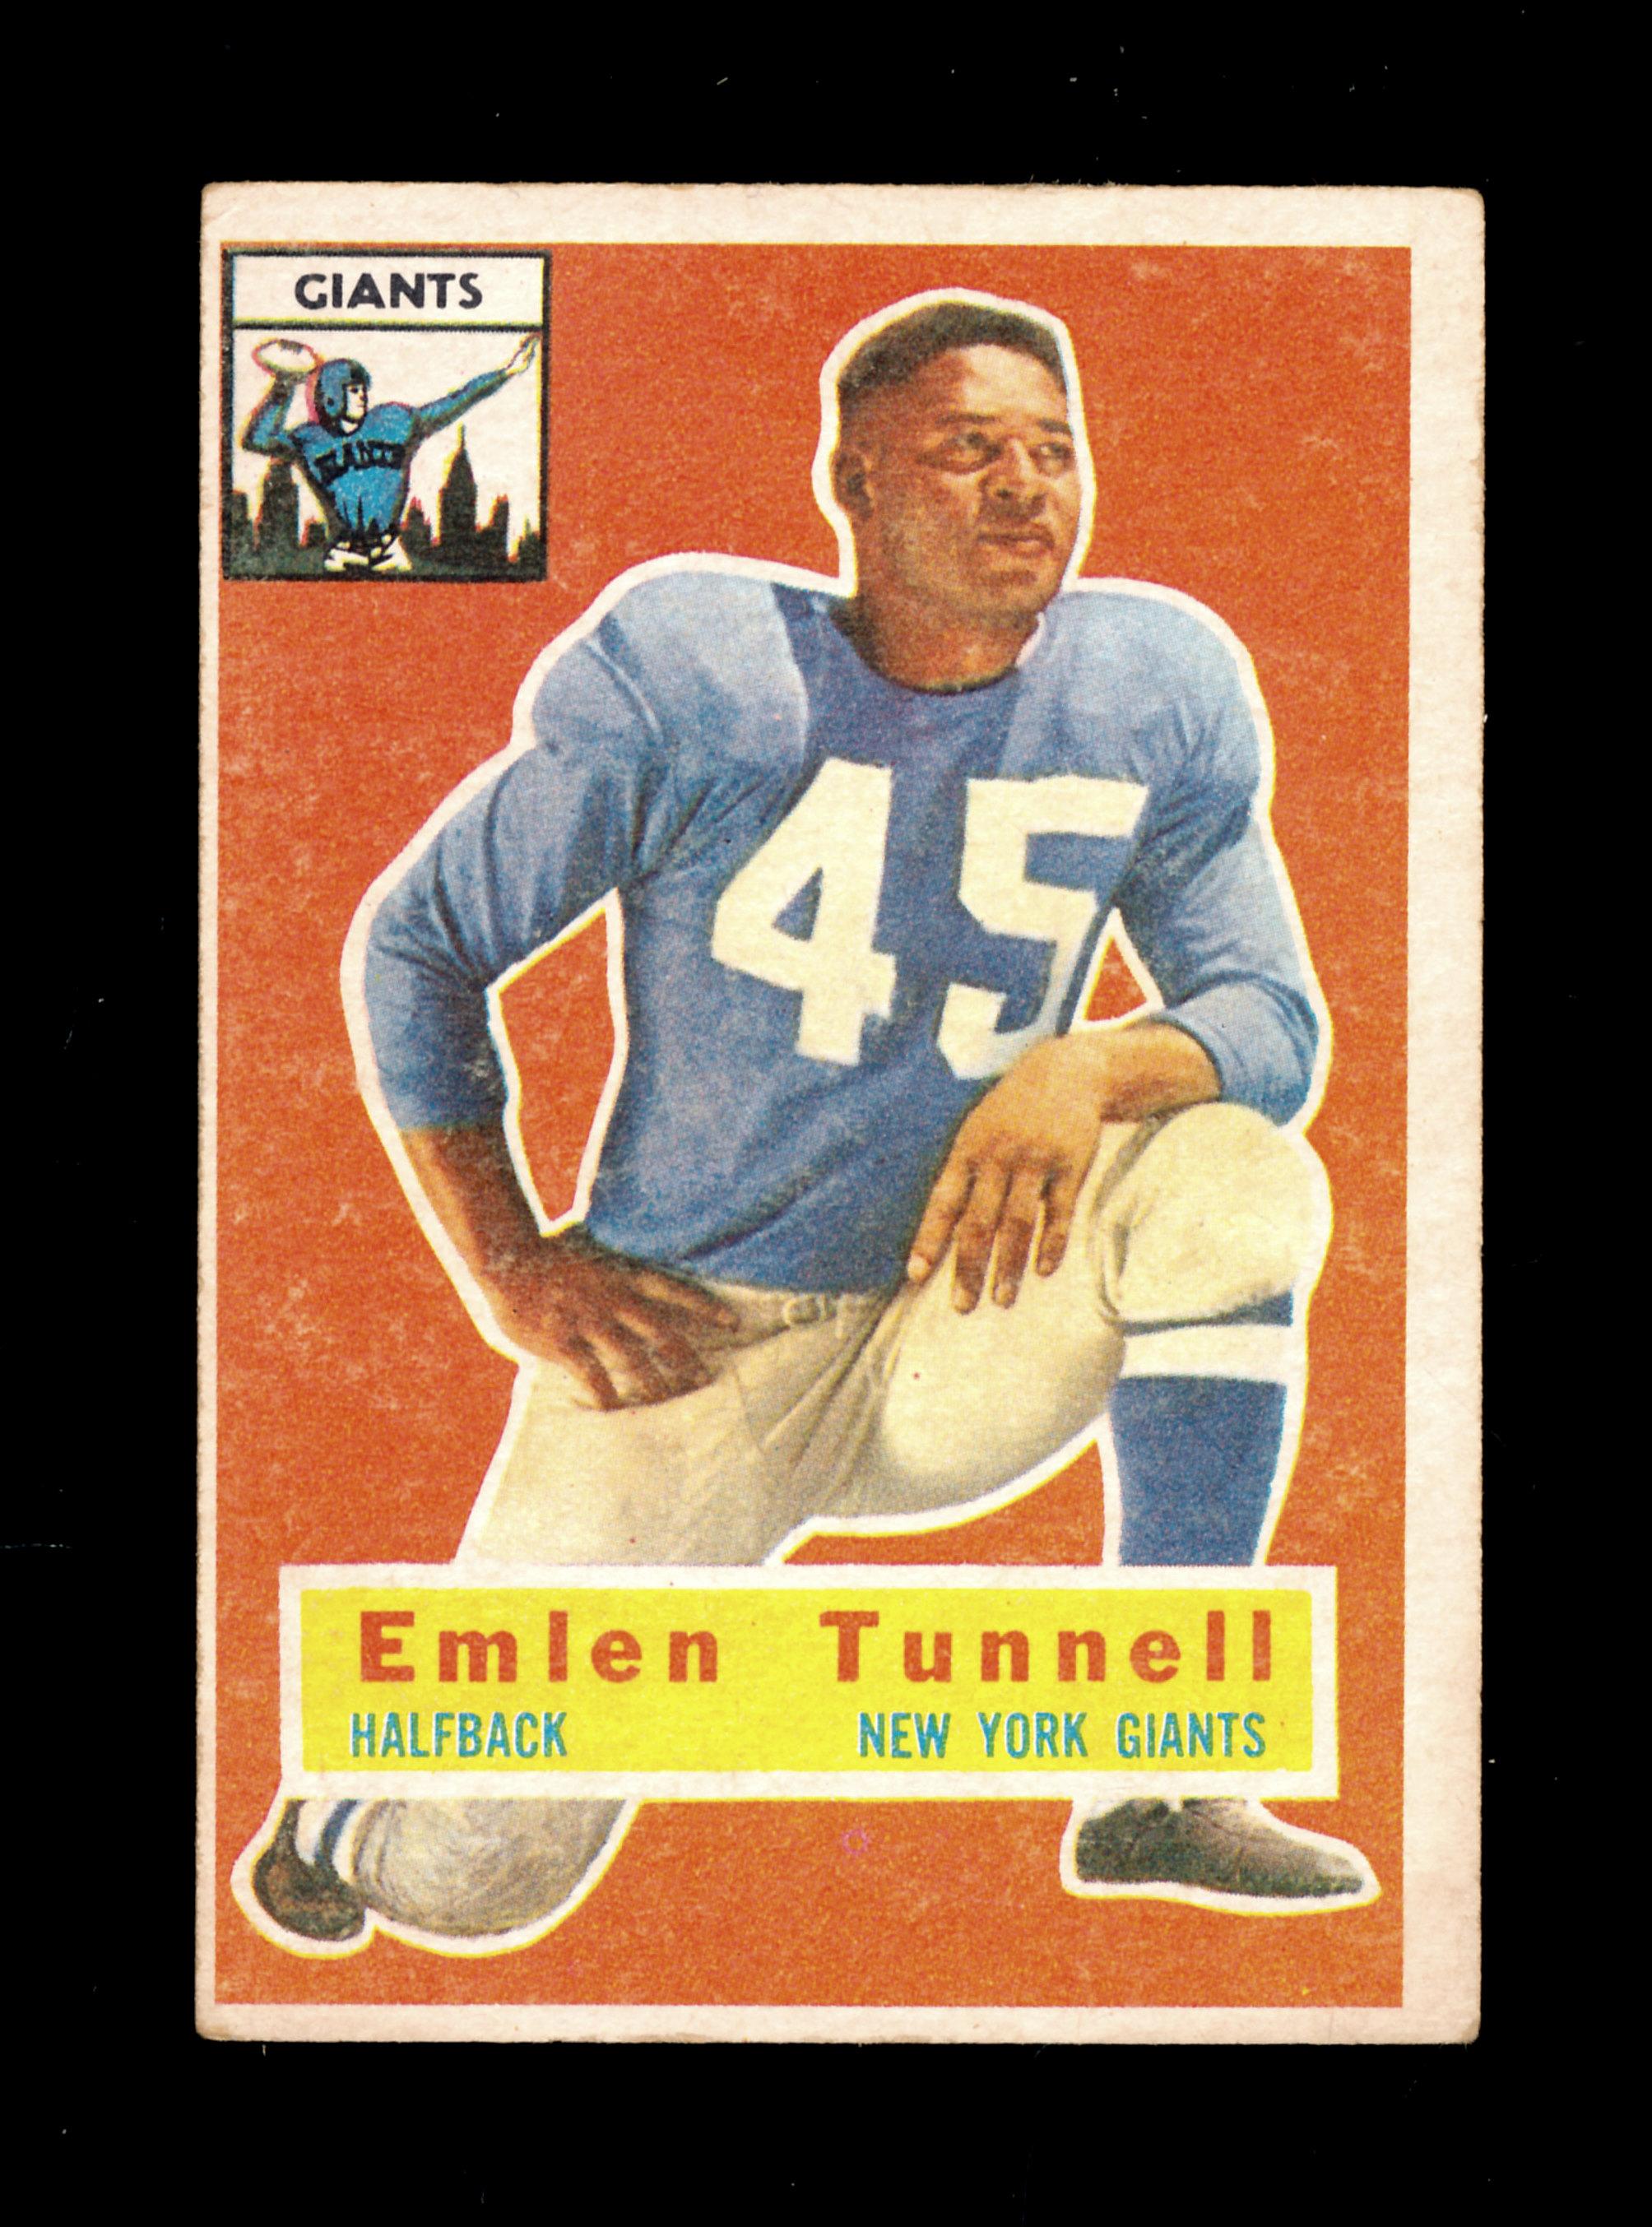 1956 Topps Football Card #17 Hall of Famer Emlen Tunnell New York Giants. V